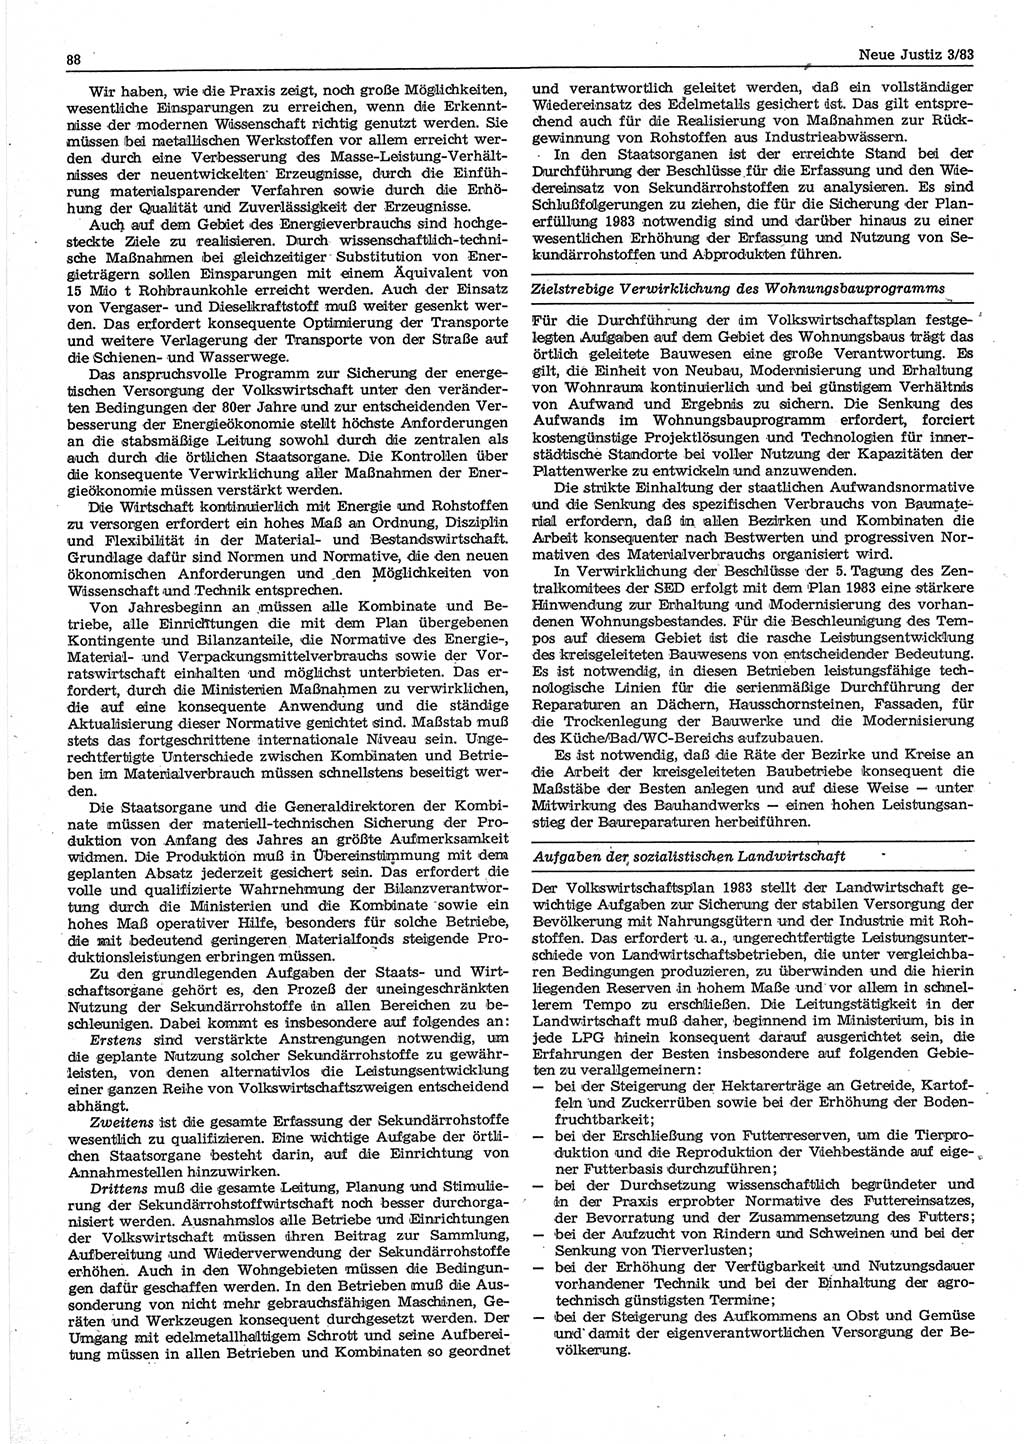 Neue Justiz (NJ), Zeitschrift für sozialistisches Recht und Gesetzlichkeit [Deutsche Demokratische Republik (DDR)], 37. Jahrgang 1983, Seite 88 (NJ DDR 1983, S. 88)